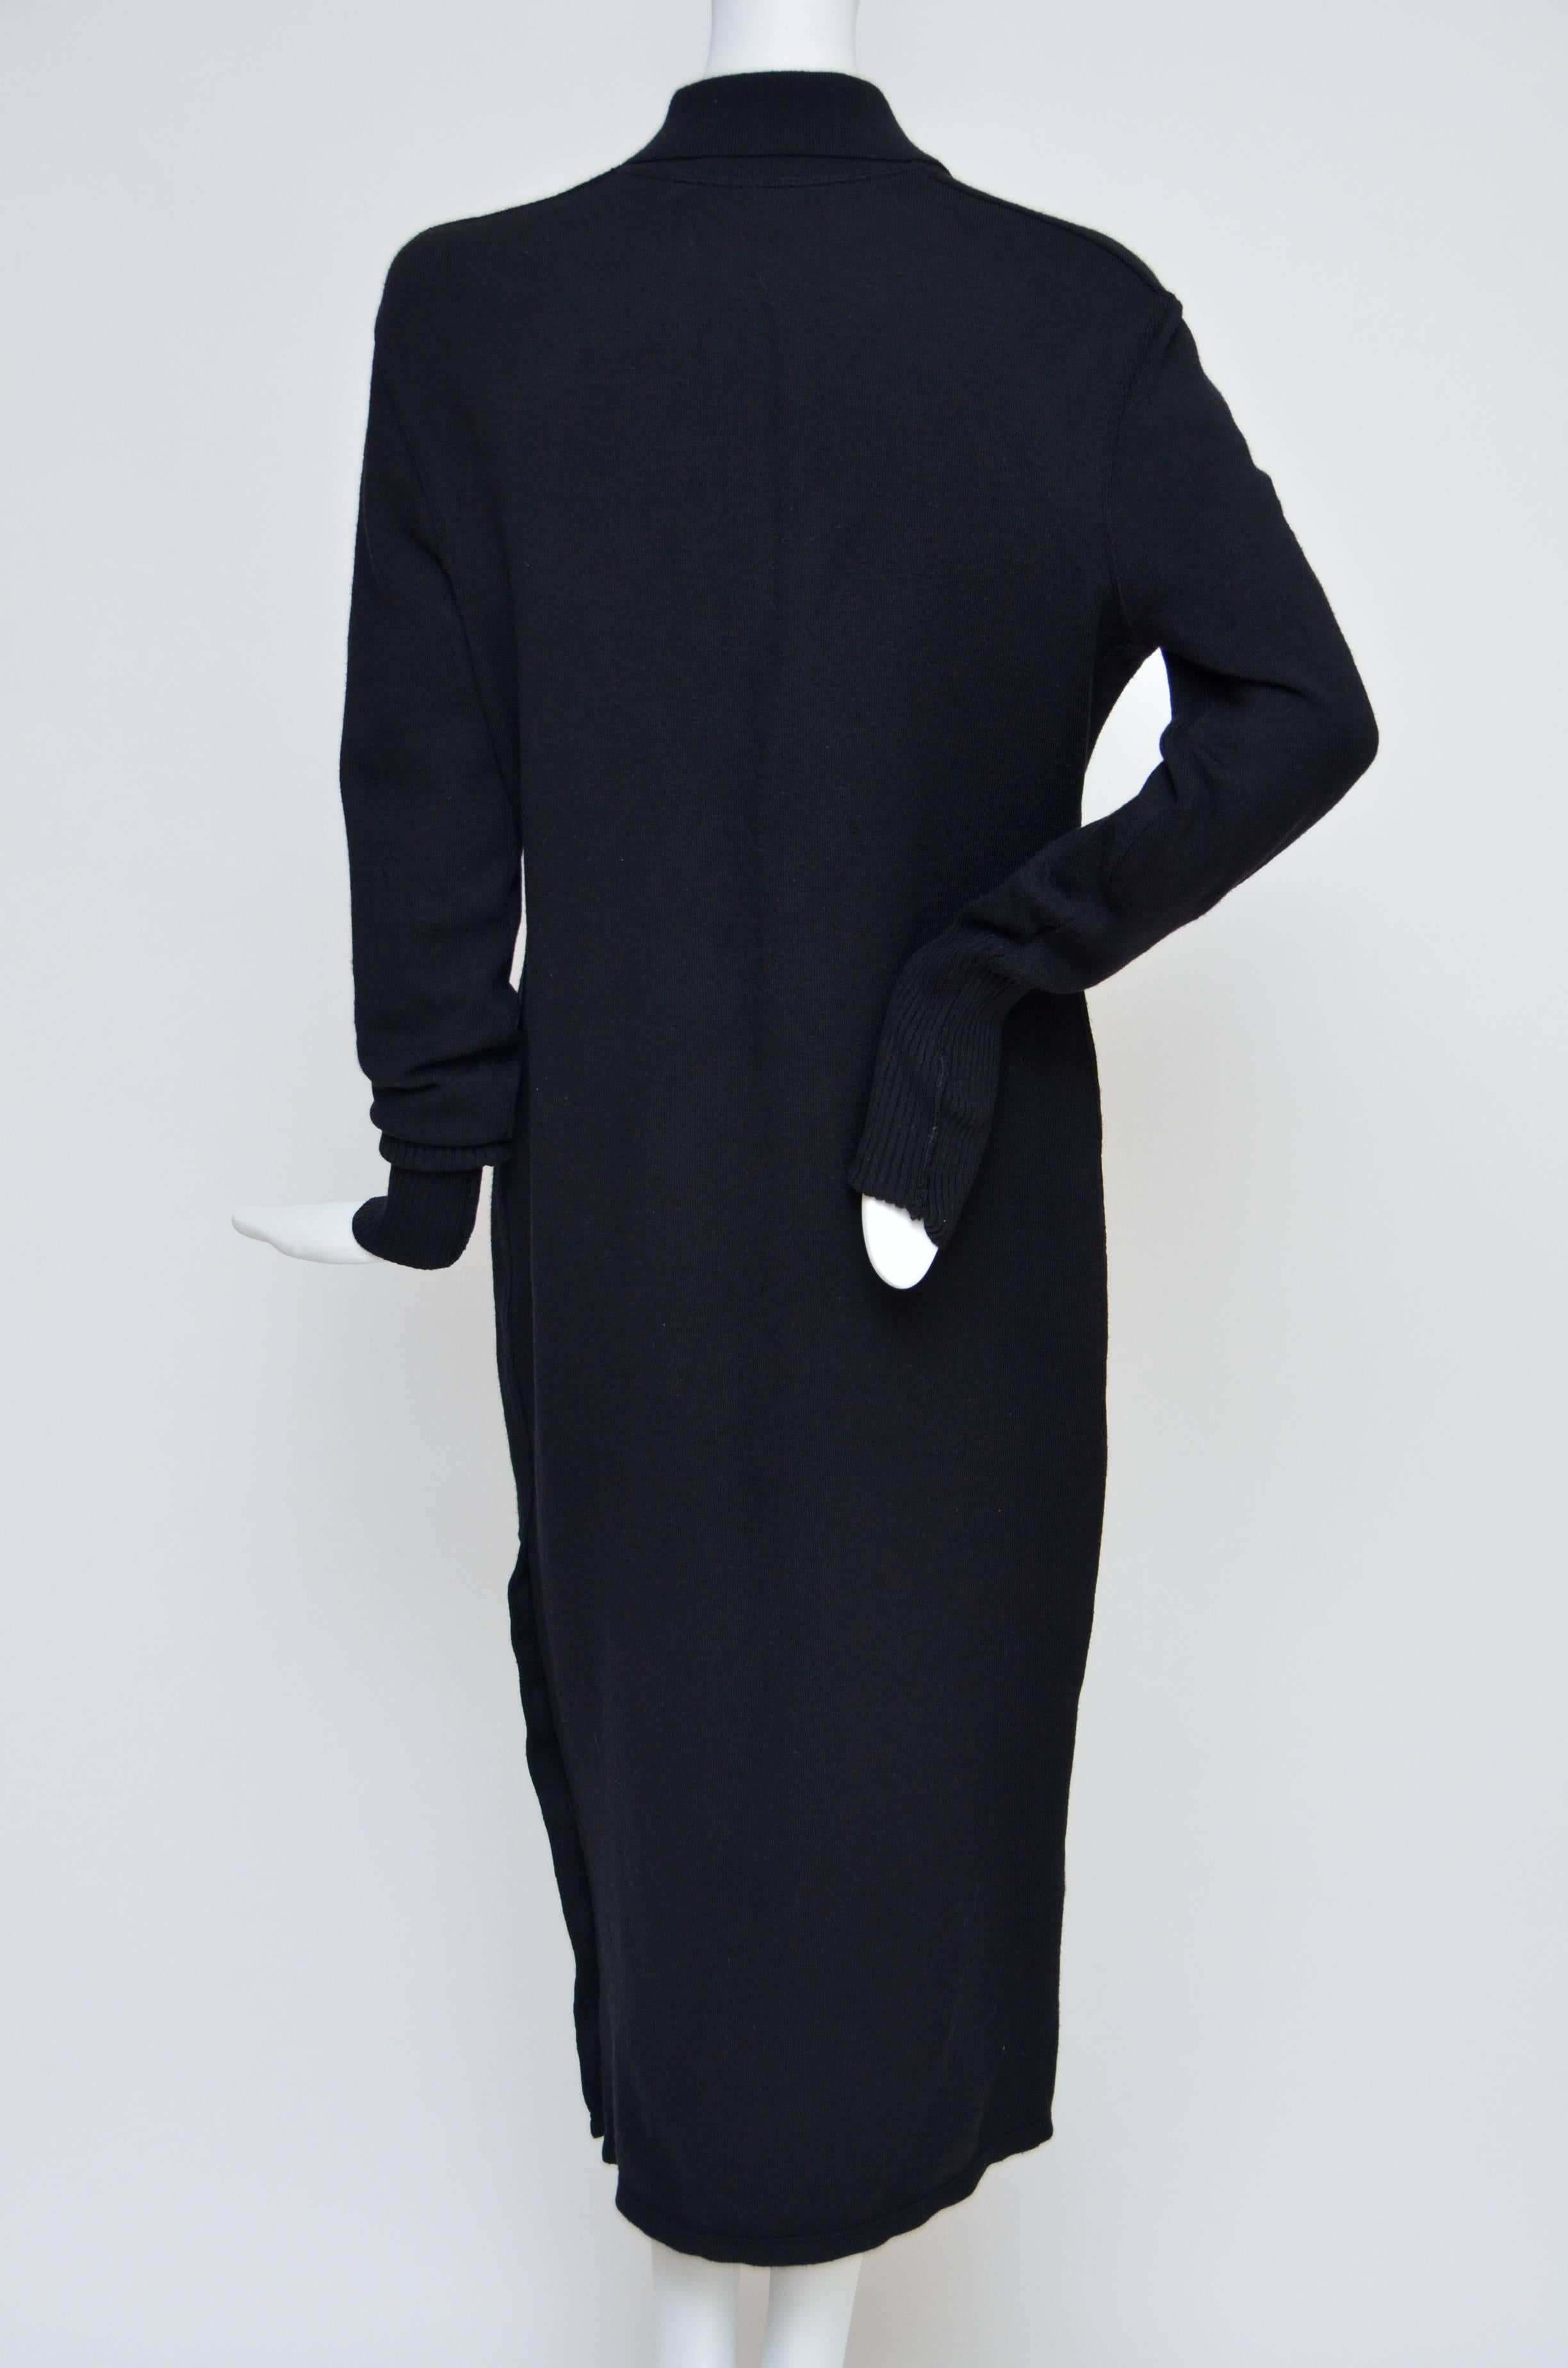 Robe noire vintage de Chanel en excellent état.
Gros boutons CC sur le devant et les côtés.
Très belle robe, tissu épais. 
Les tissus ne présentent ni trous ni décoloration.
Les manches sont bordées de côtes et peuvent être repliées. Photographié